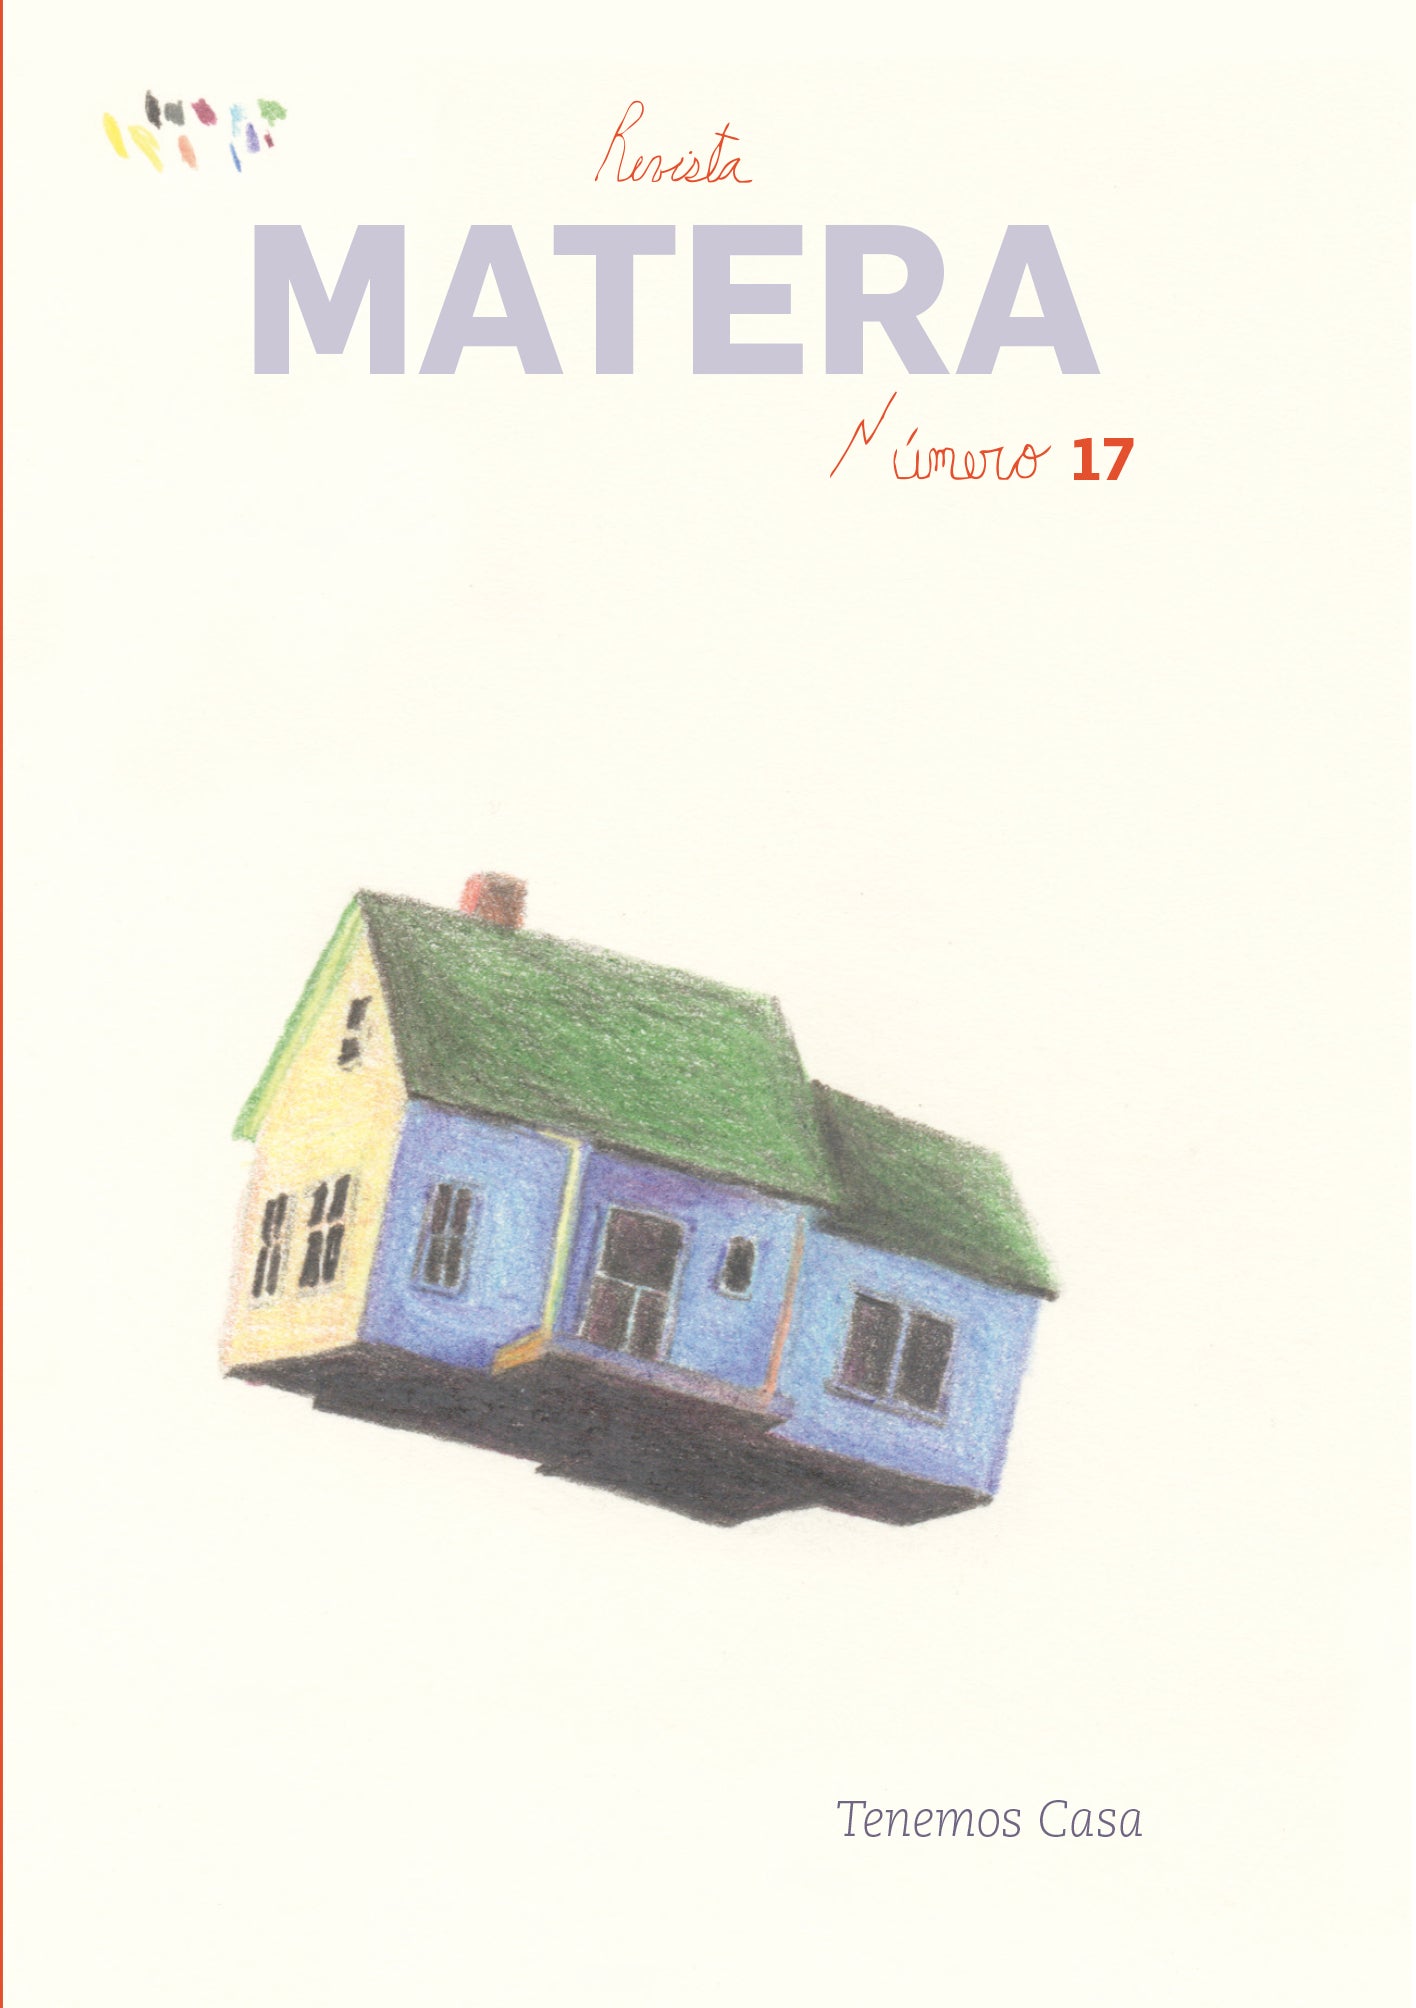 Revista Matera # 17 Tenemos casa